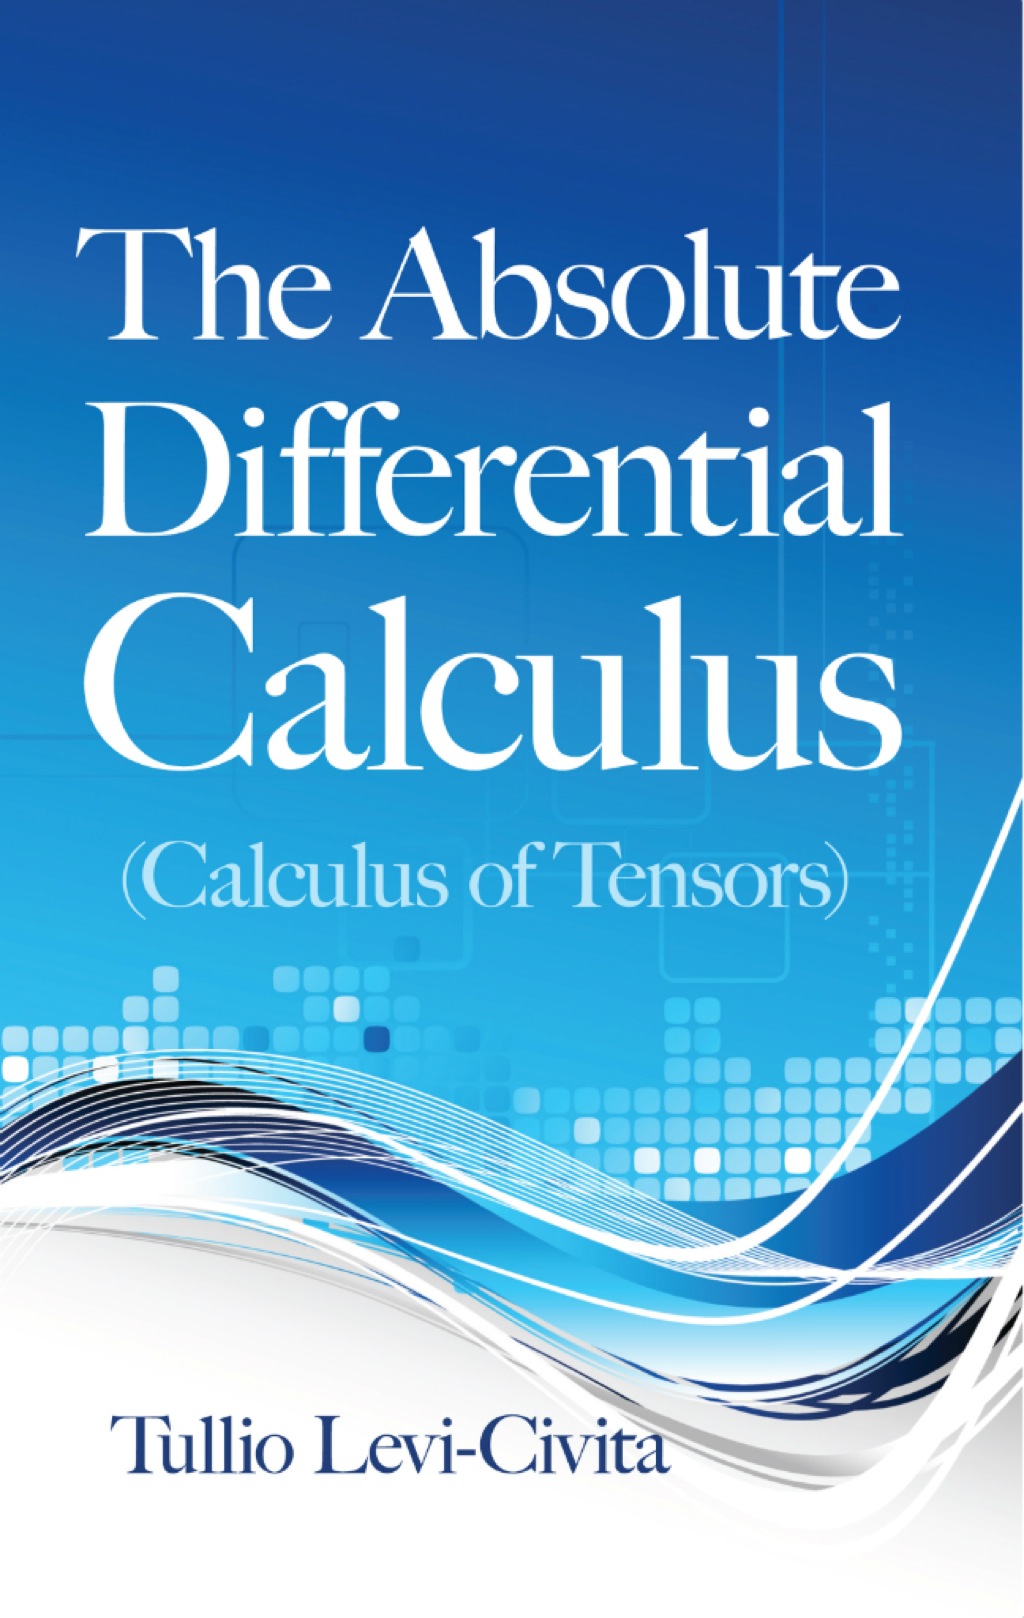 The Absolute Differential Calculus (Calculus of Tensors) (eBook) - Tullio Levi-Civita,